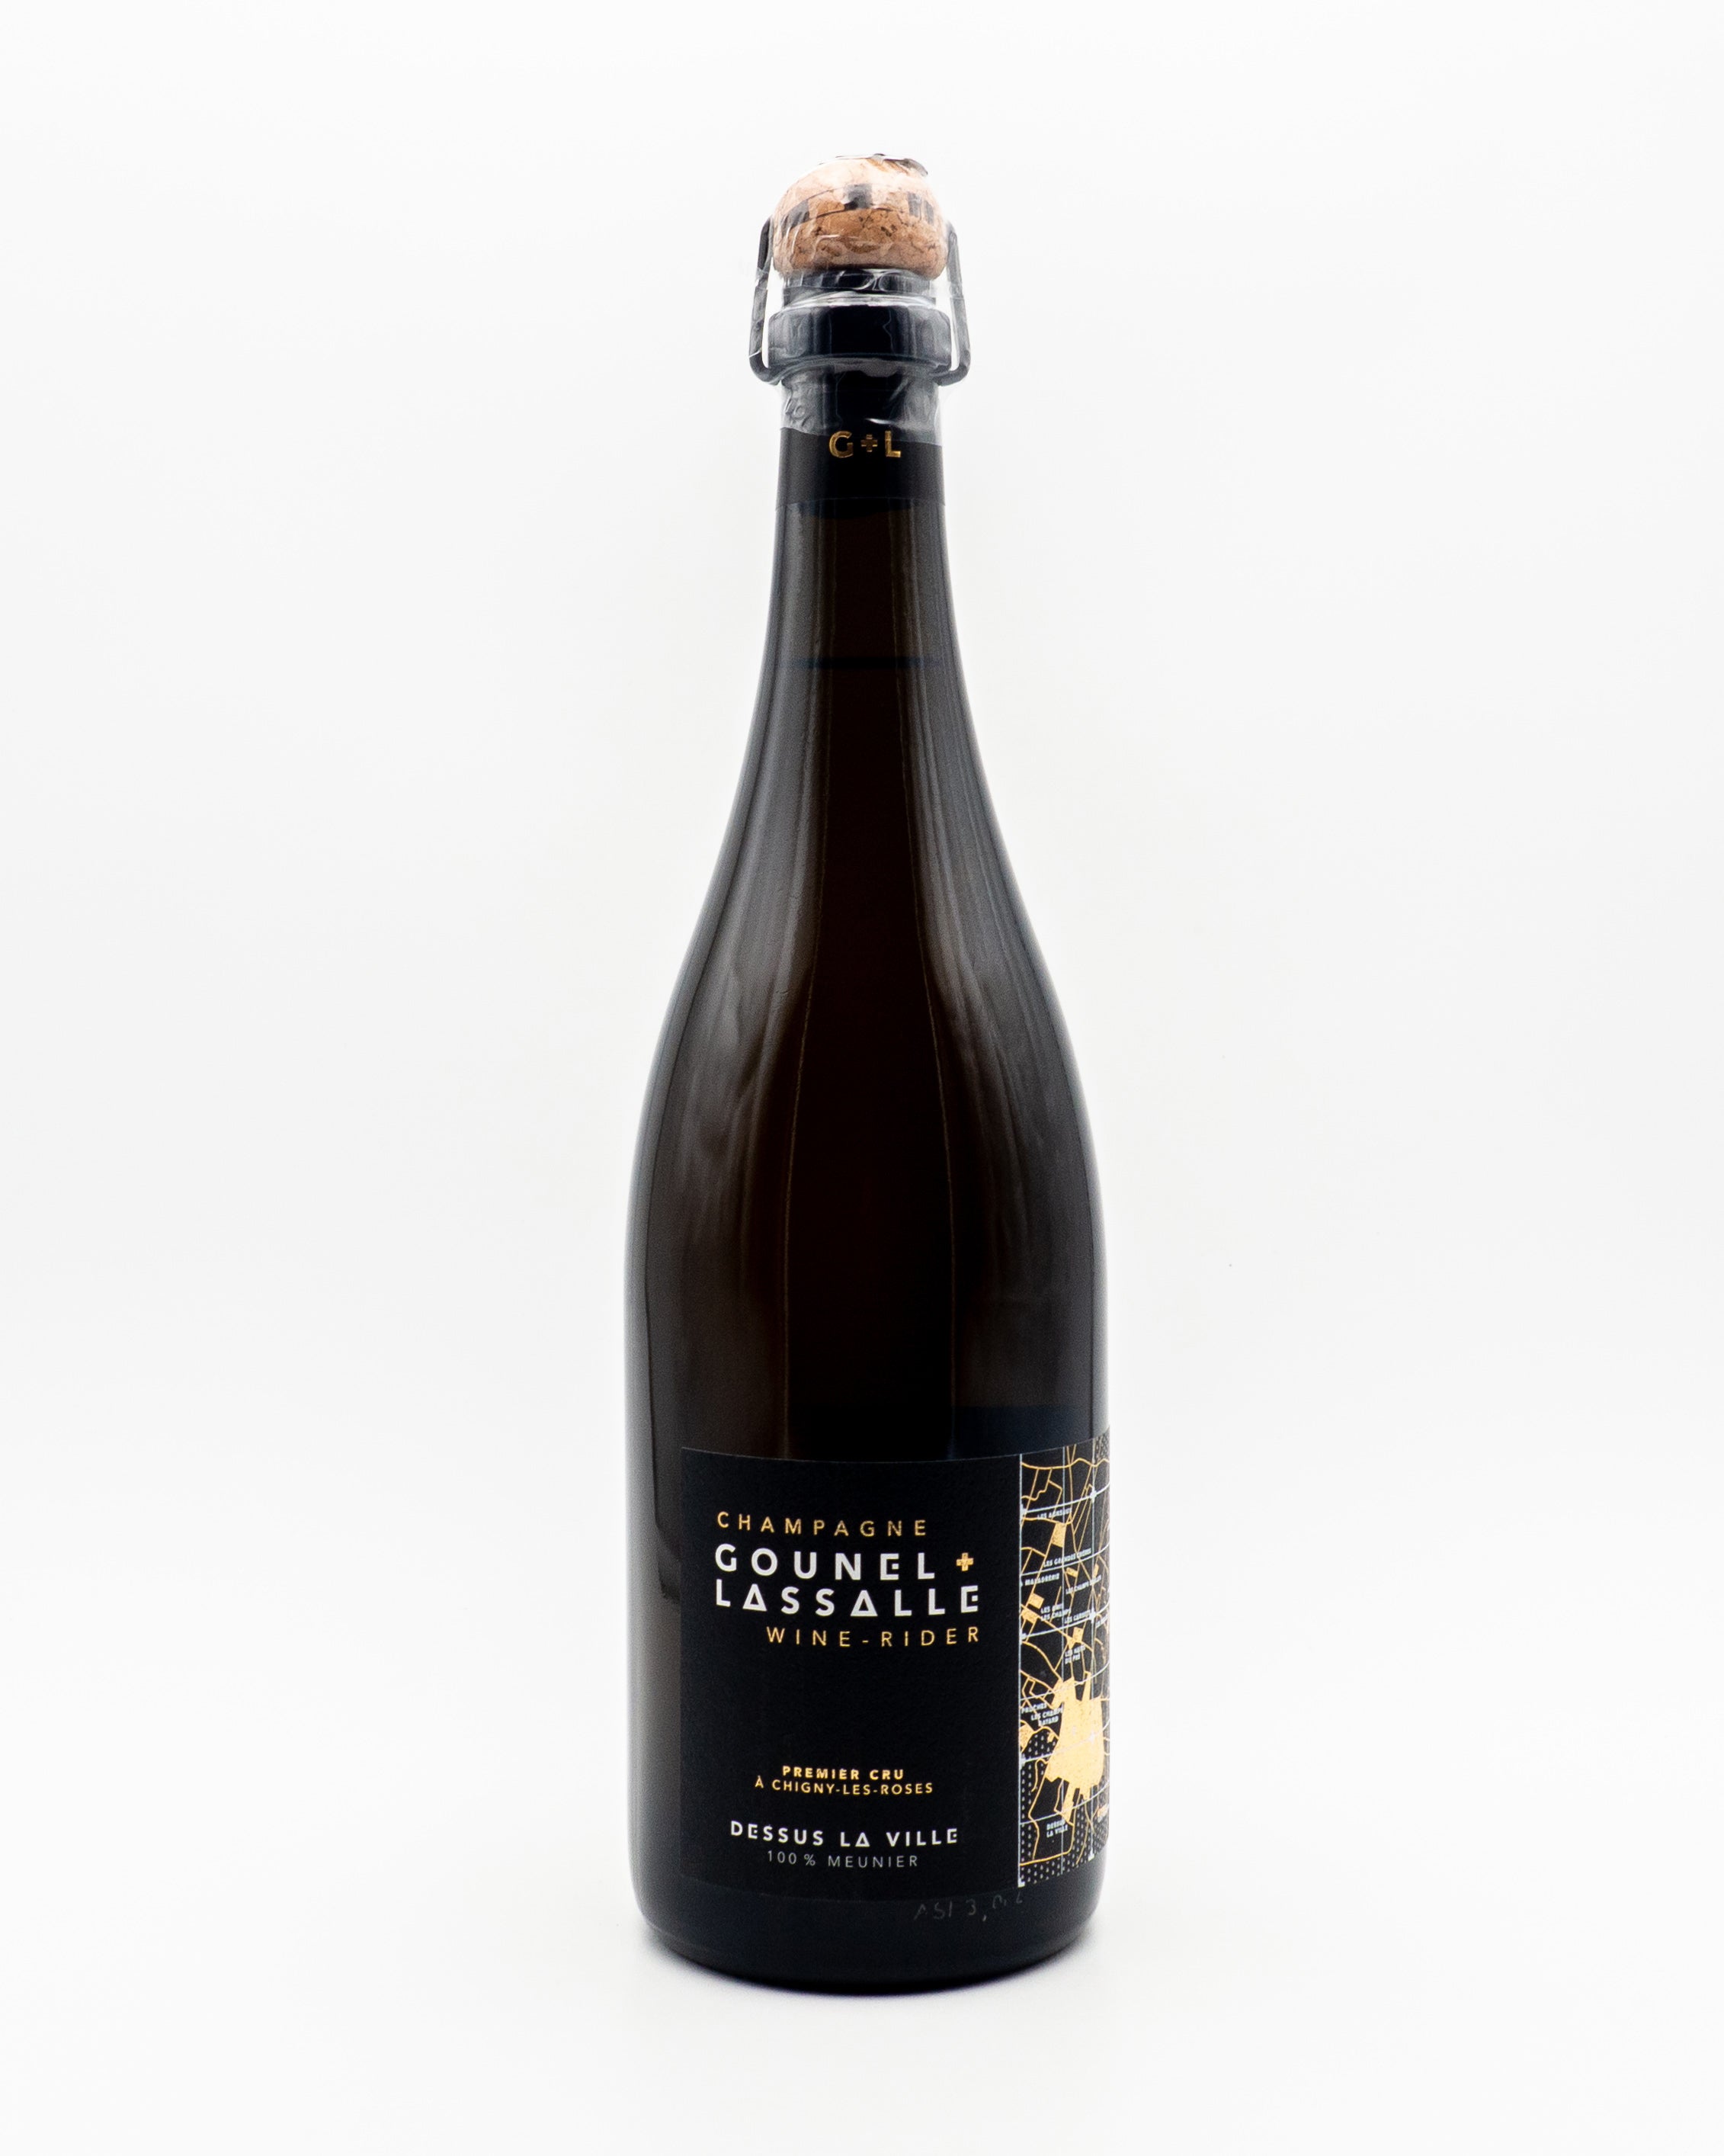 Champagne Dessus La Ville 100% Meunier Premier Cru - Gounel - Lassalle